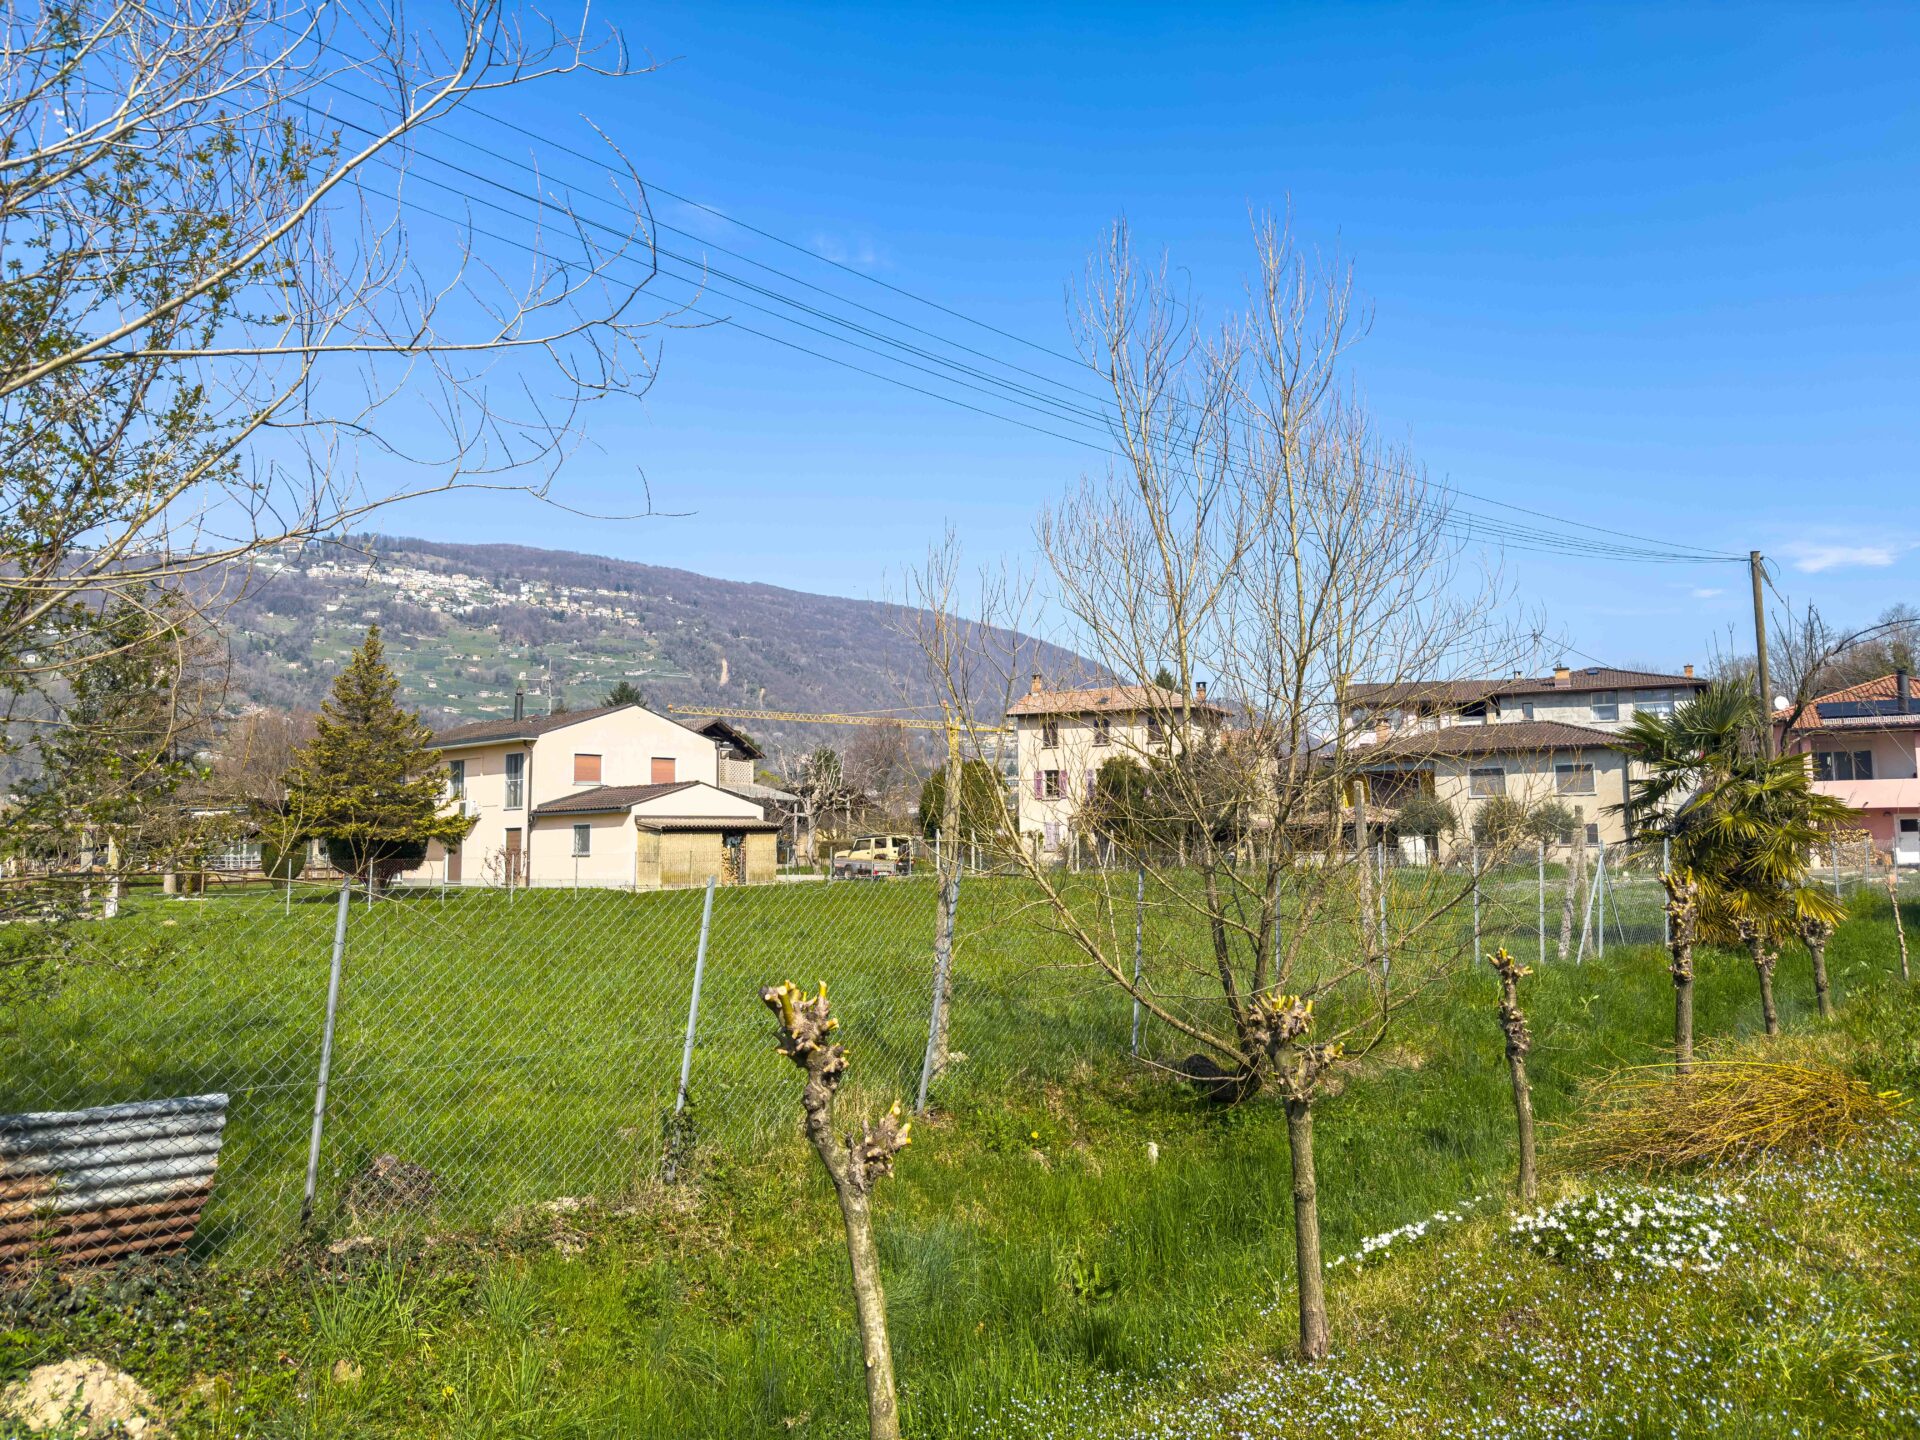 Building land for sale in Muzzano